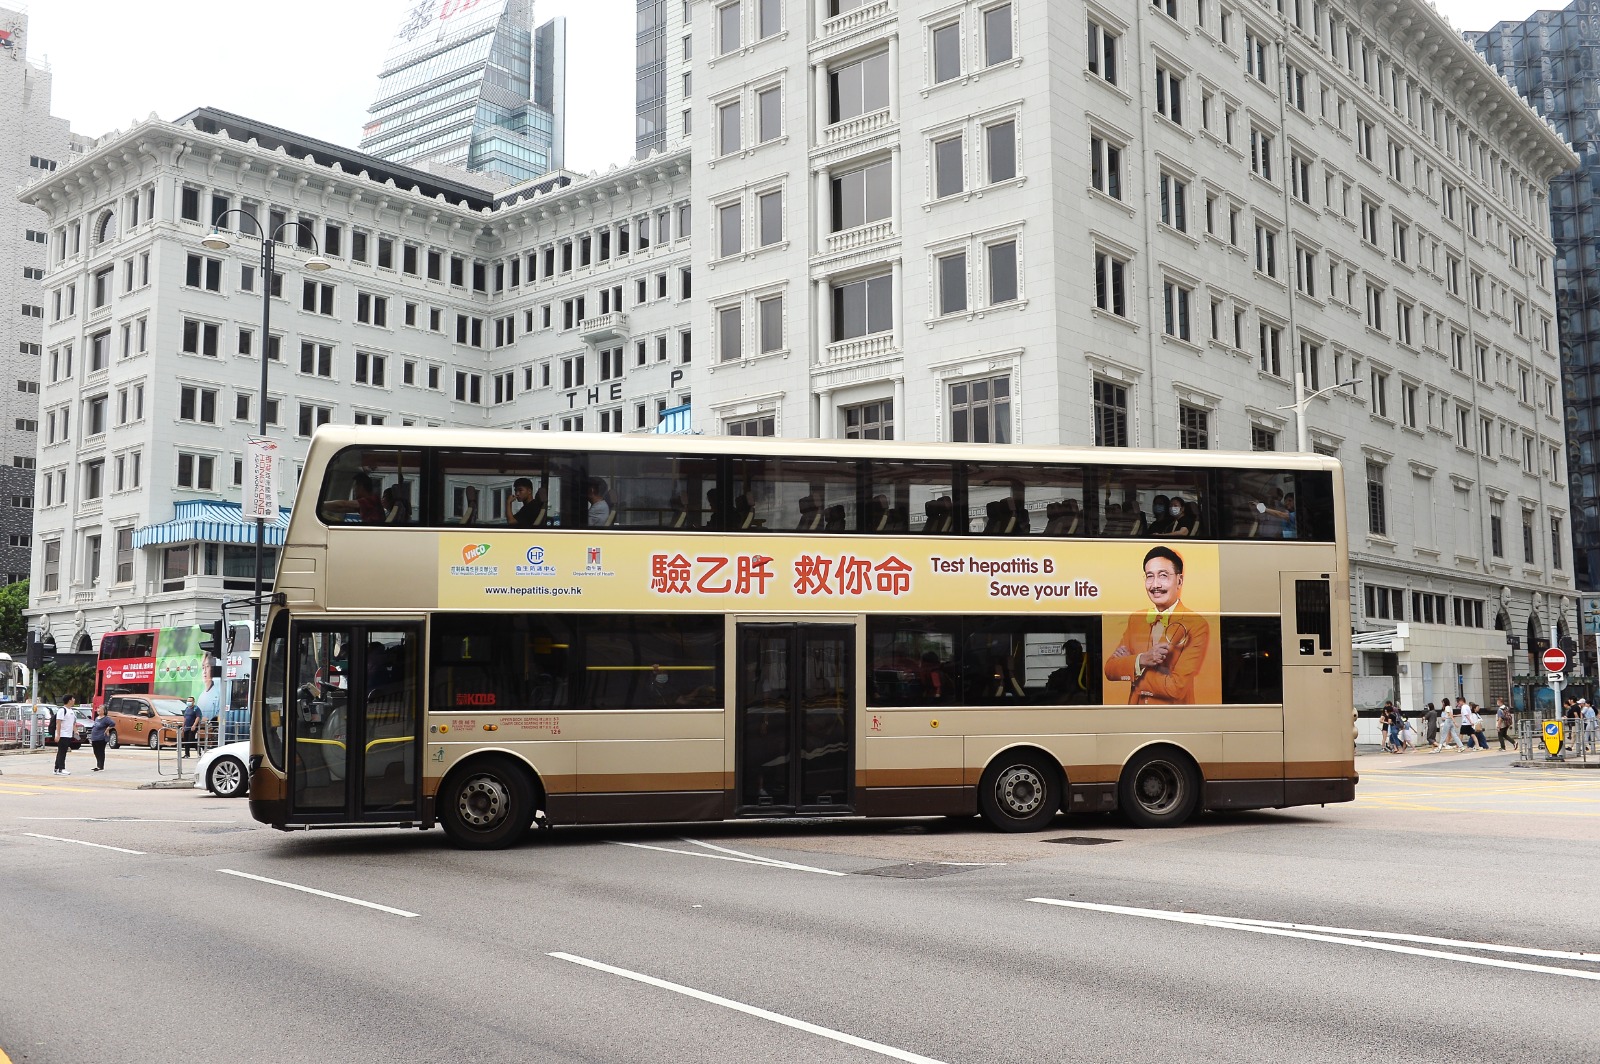 以「验乙肝　救你命」为主题的巴士车身广告